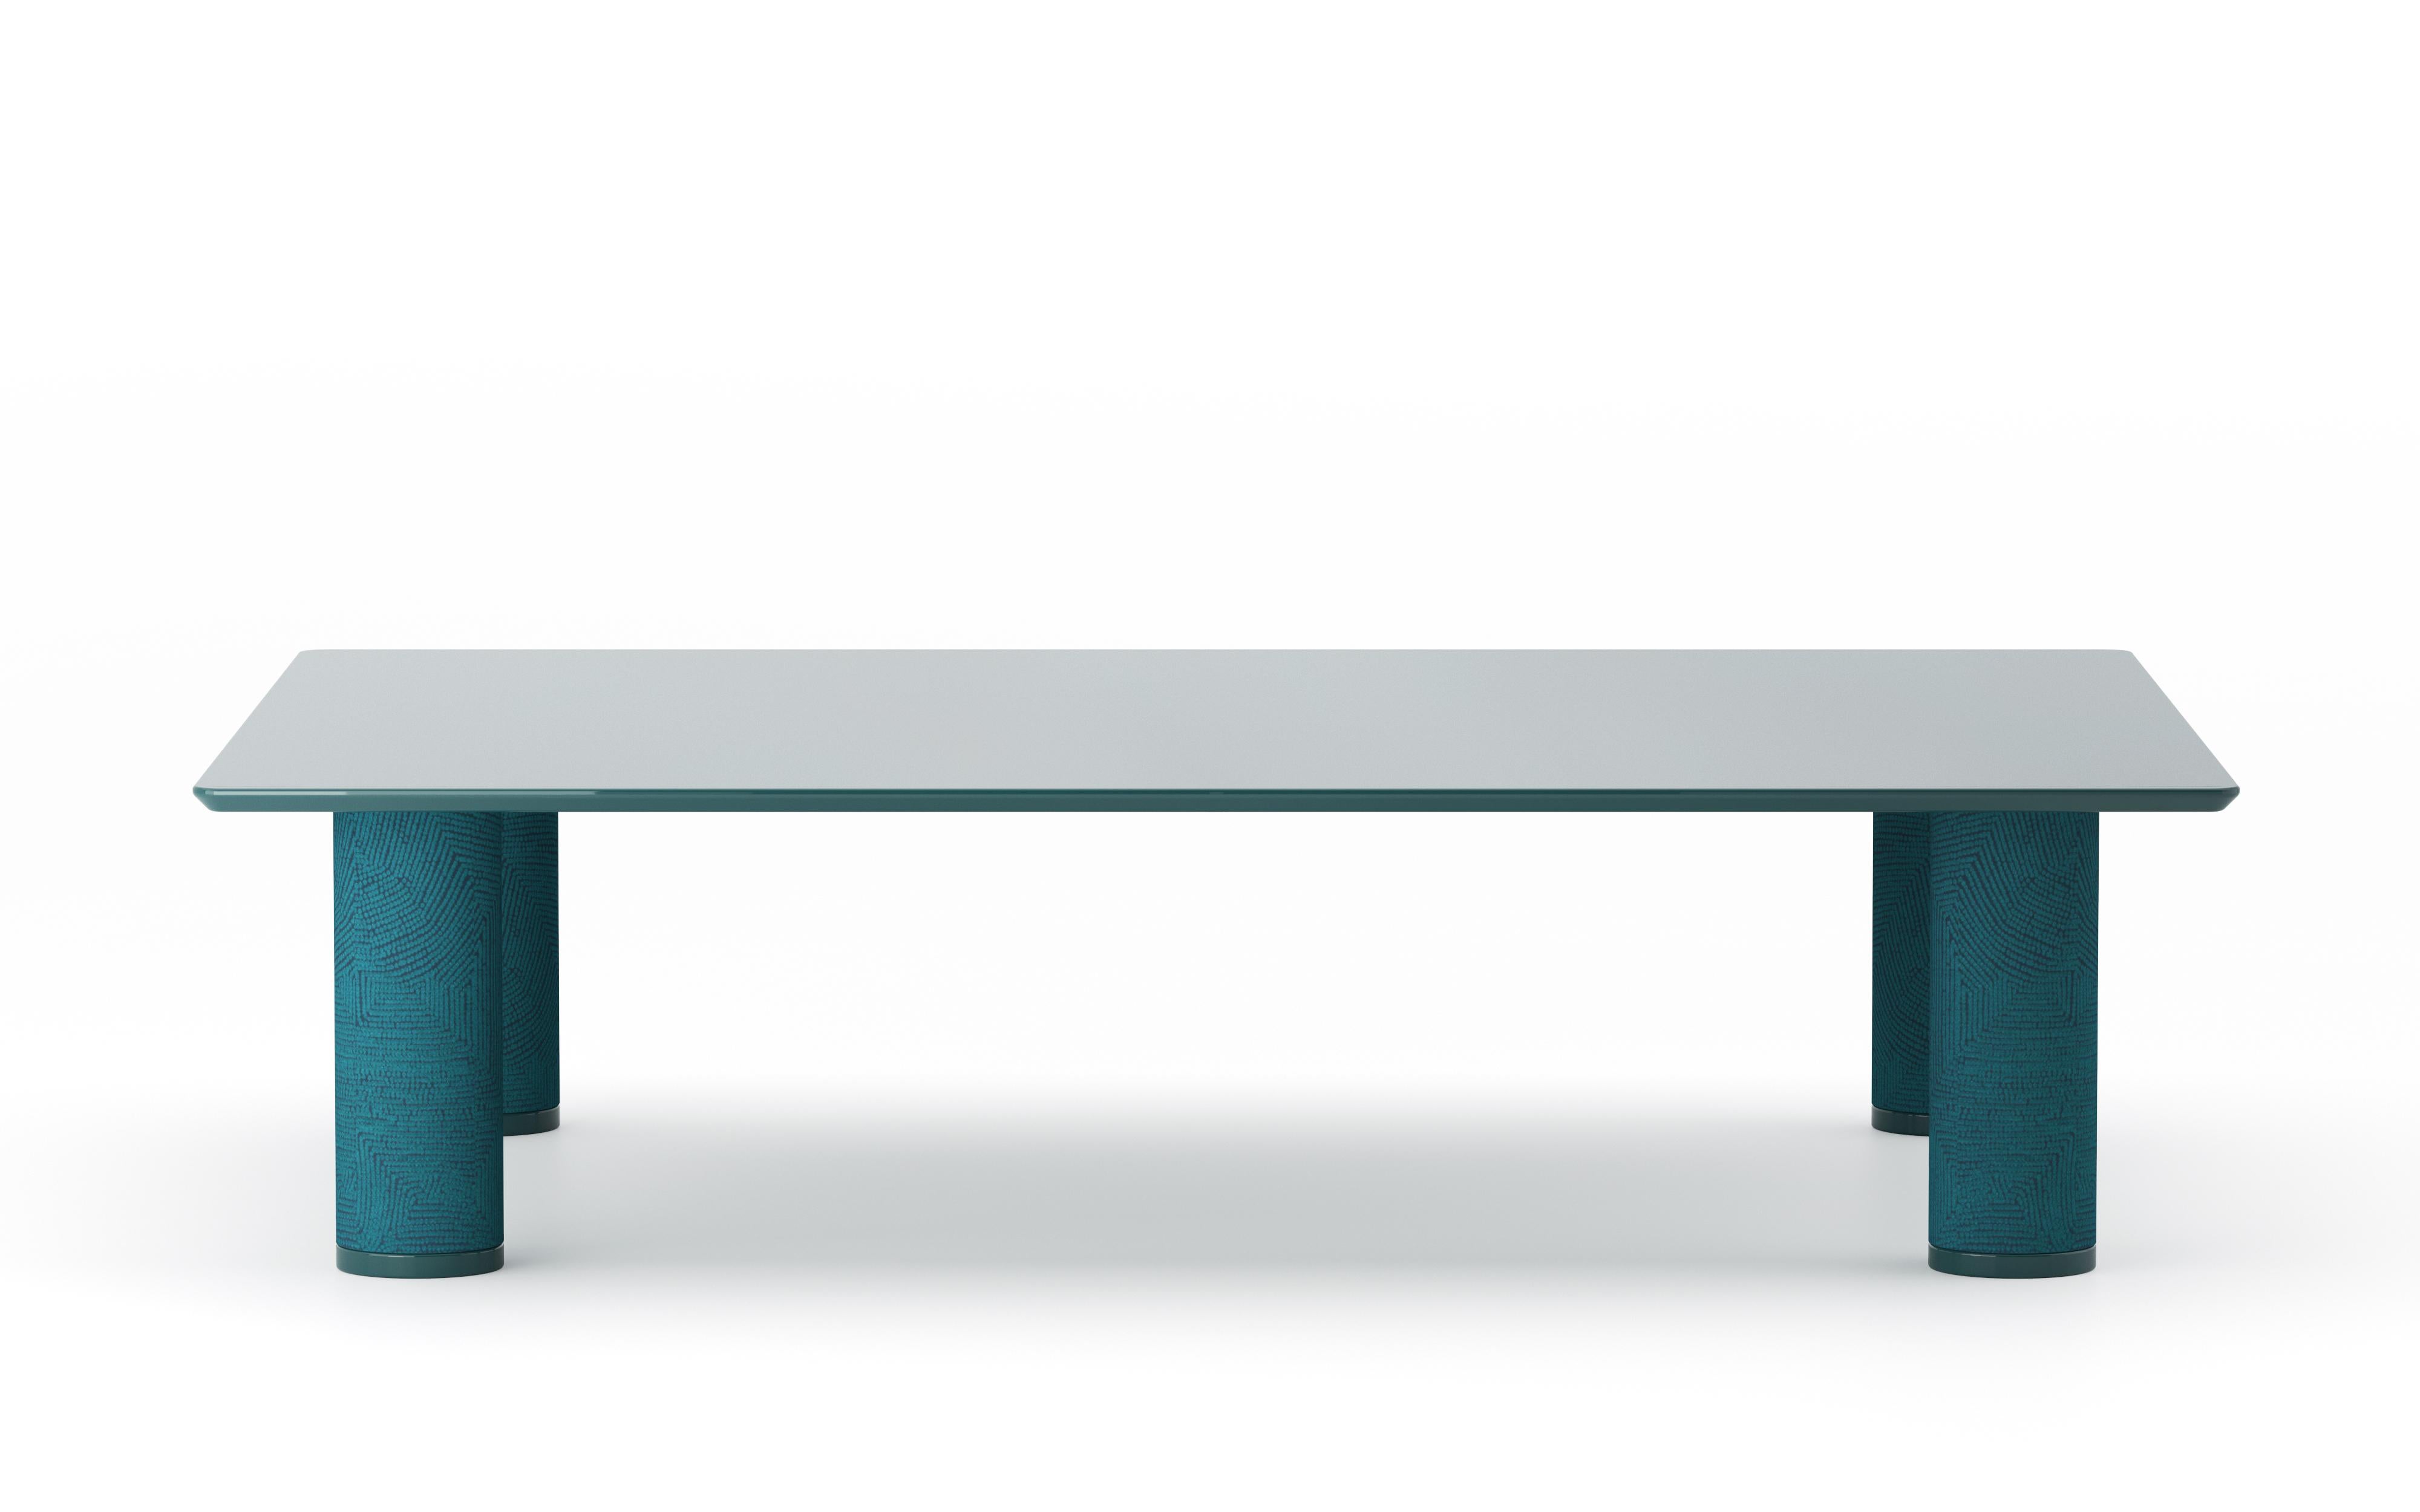 UMA Rectangular ist ein Tisch aus der gleichnamigen Kollektion, die von Ludovica+Roberto Palomba für P + C Edizioni im Frühjahr 2022 entworfen wurde.
Mit seiner rechteckigen Harzplatte setzt UMA Rectangular den Designakzent auf die zylindrischen